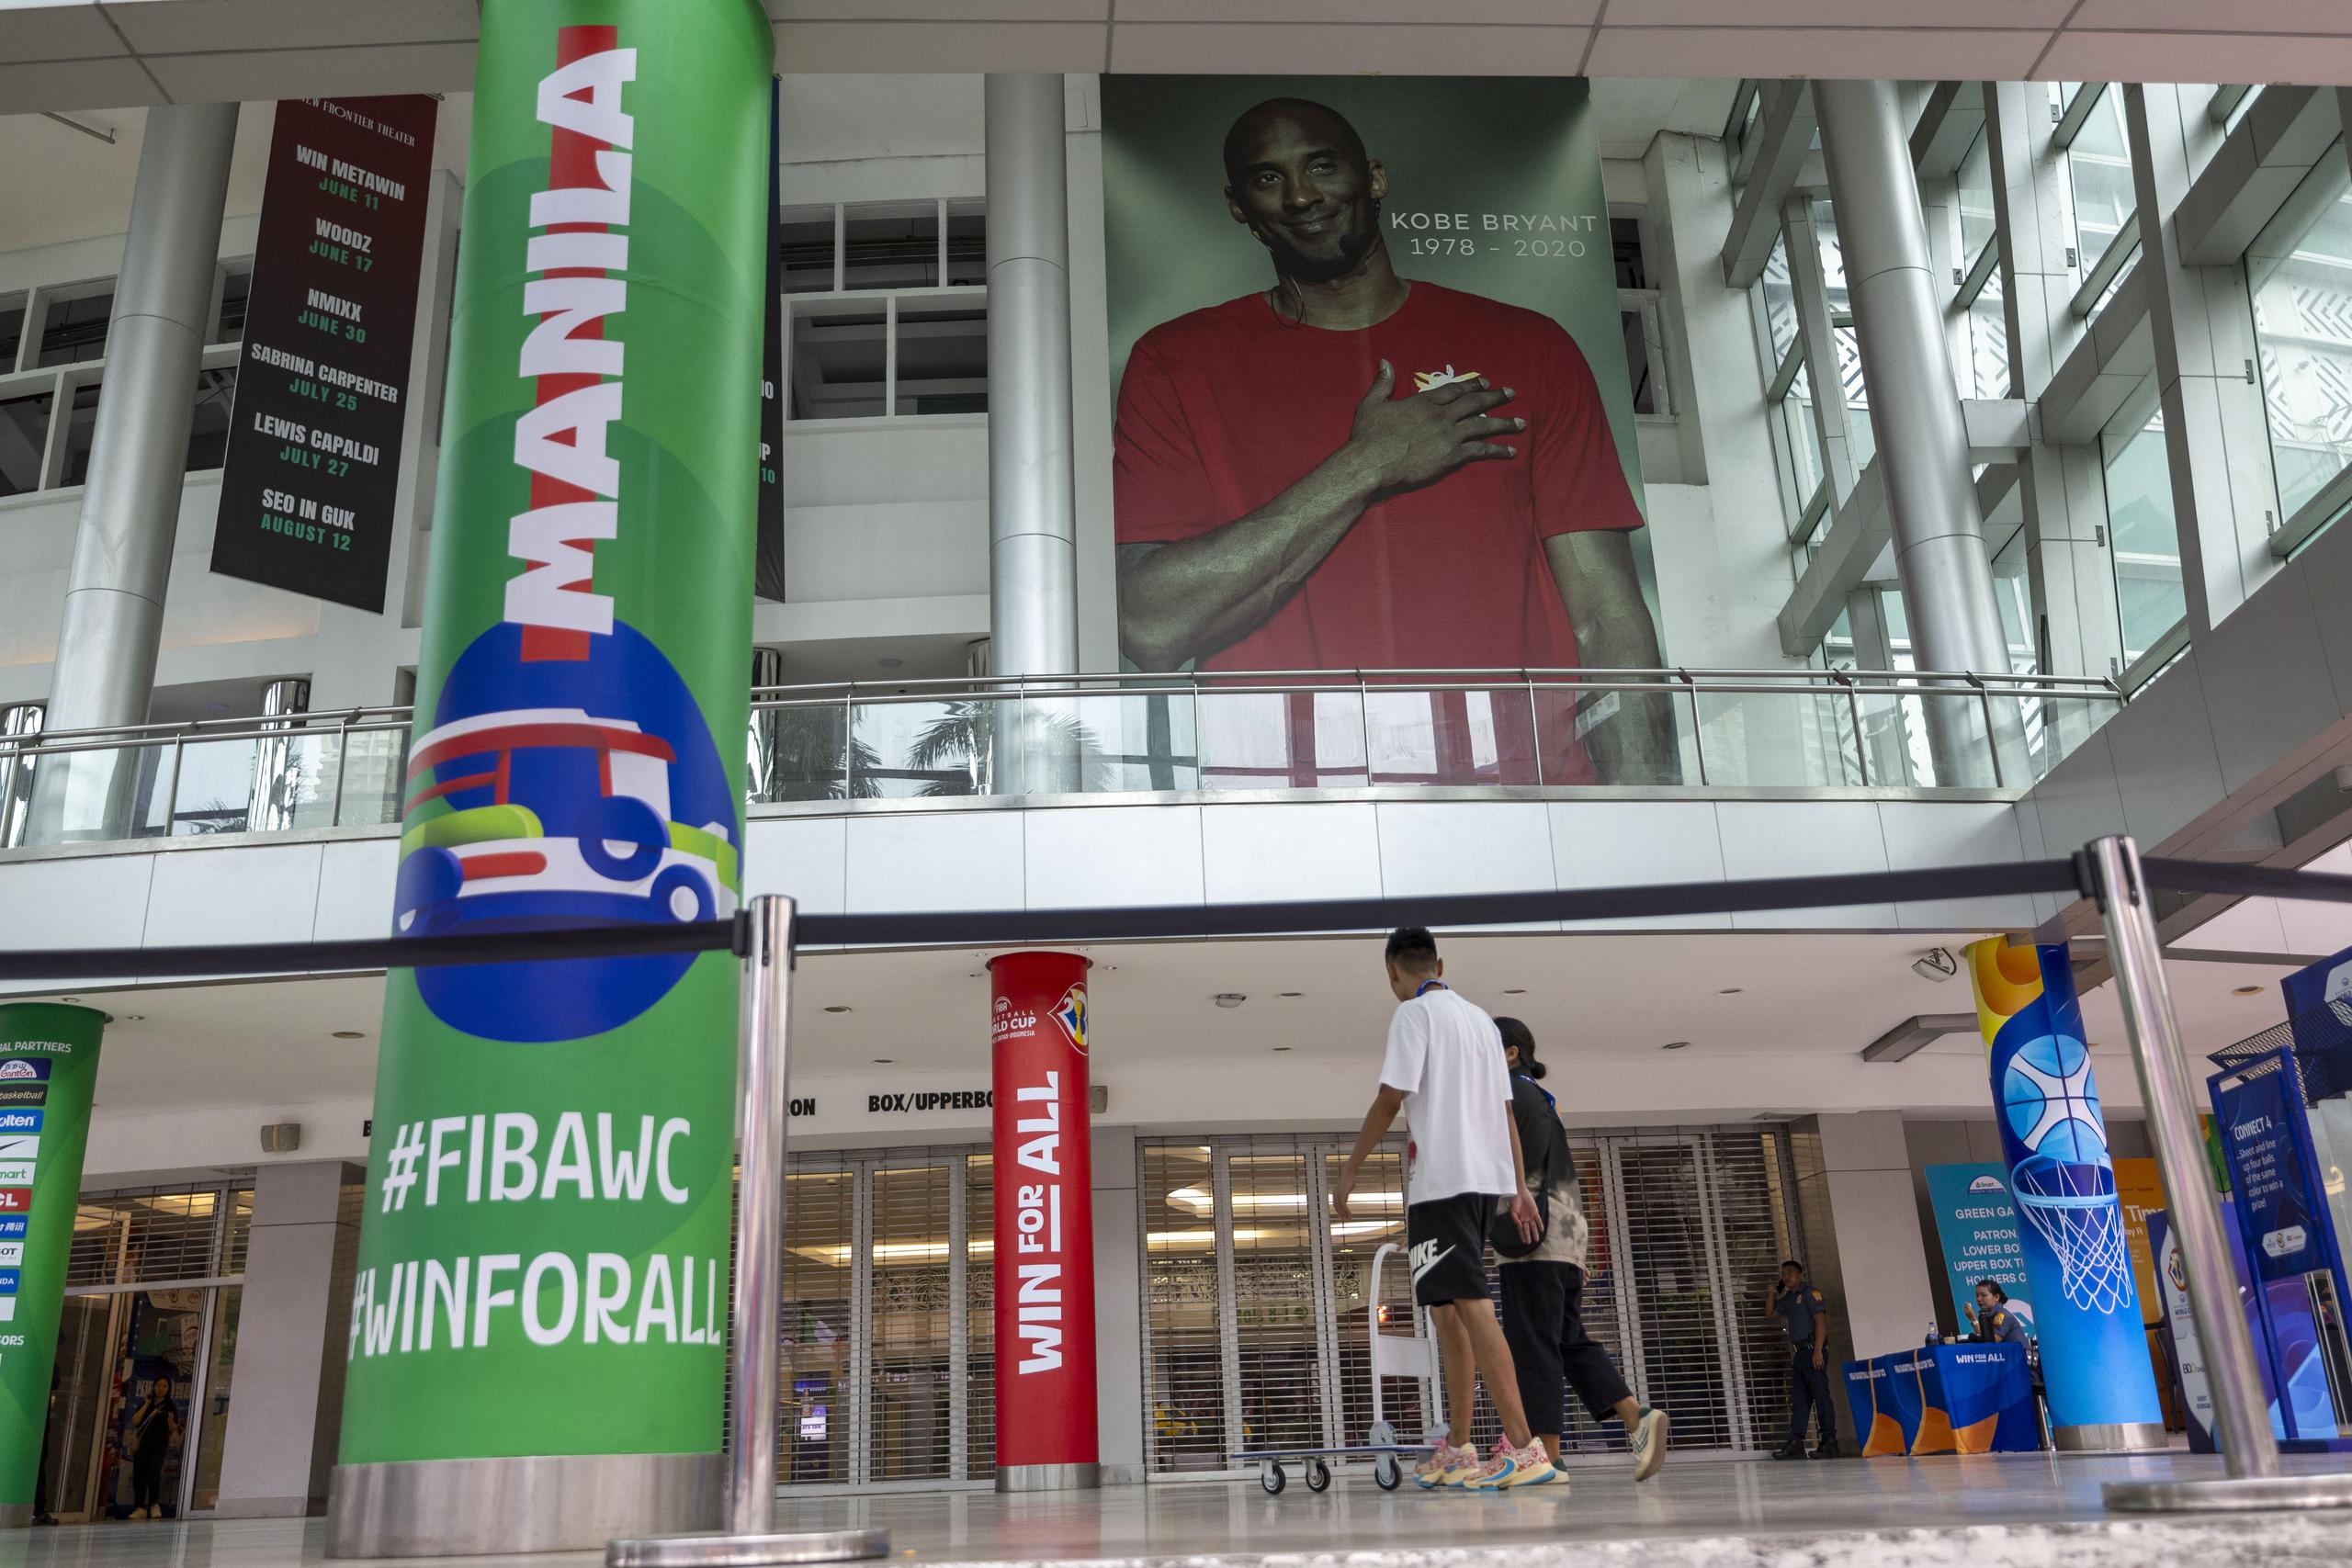 Así luce la entrada al Smart Araneta Coliseum en donde jugará el Equipo Nacional de Puerto Rico en la fase preliminar de la Copa del Mundo FIBA. Si observa bien, verá una foto arriba que rinde tributo memorial a Kobe Bryant.